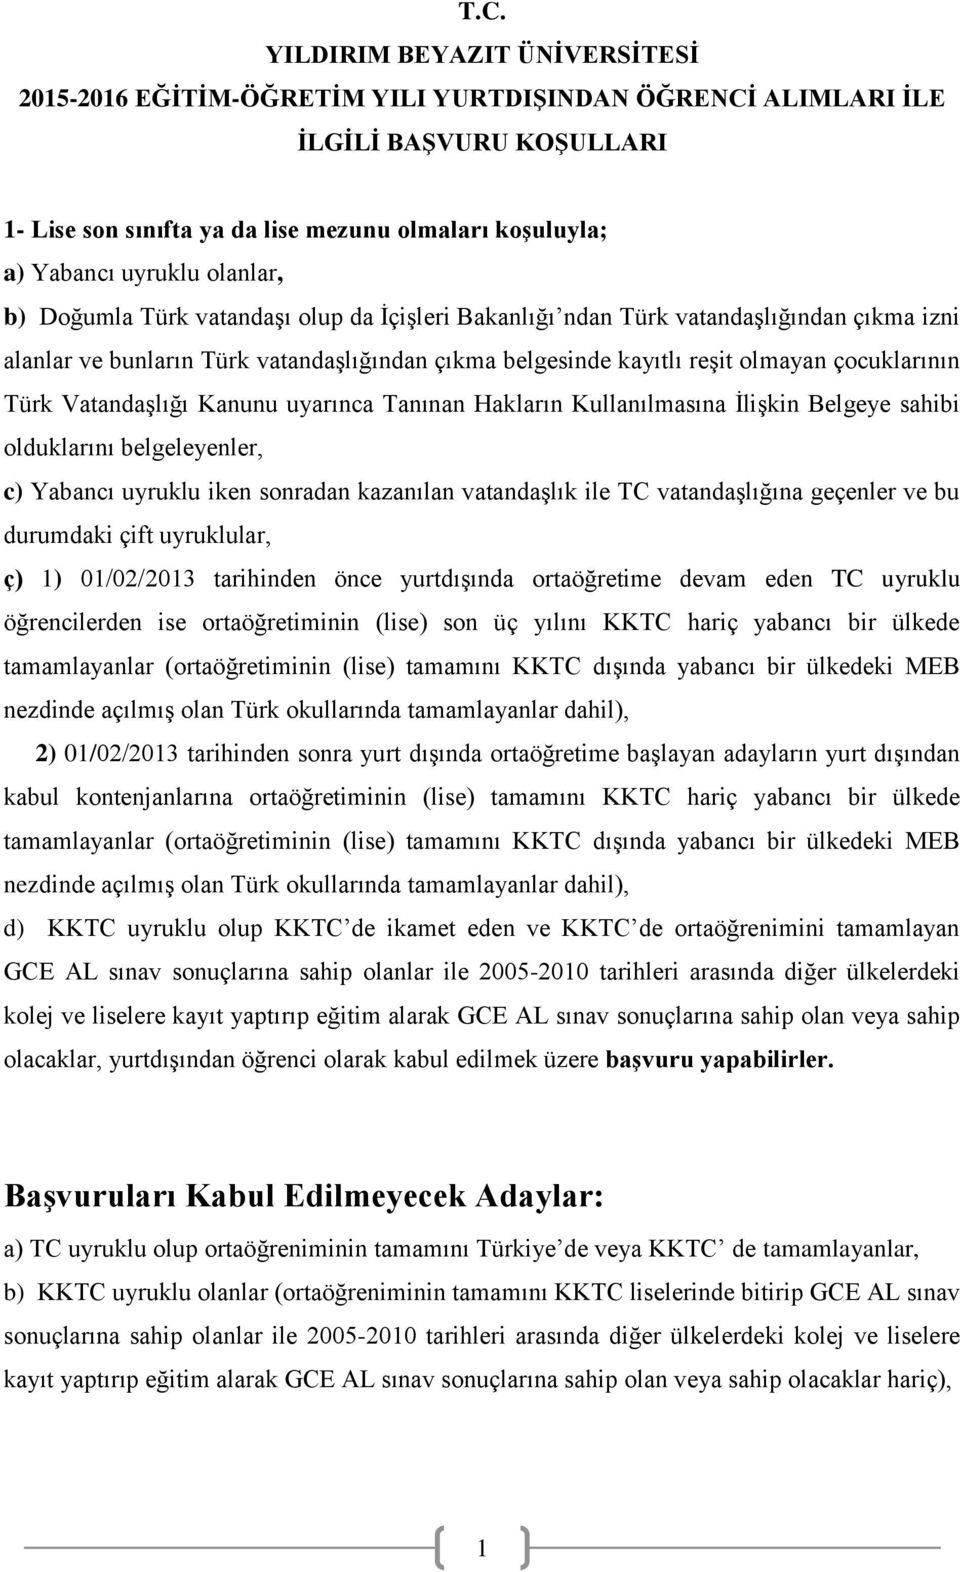 çocuklarının Türk Vatandaşlığı Kanunu uyarınca Tanınan Hakların Kullanılmasına İlişkin Belgeye sahibi olduklarını belgeleyenler, c) Yabancı uyruklu iken sonradan kazanılan vatandaşlık ile TC